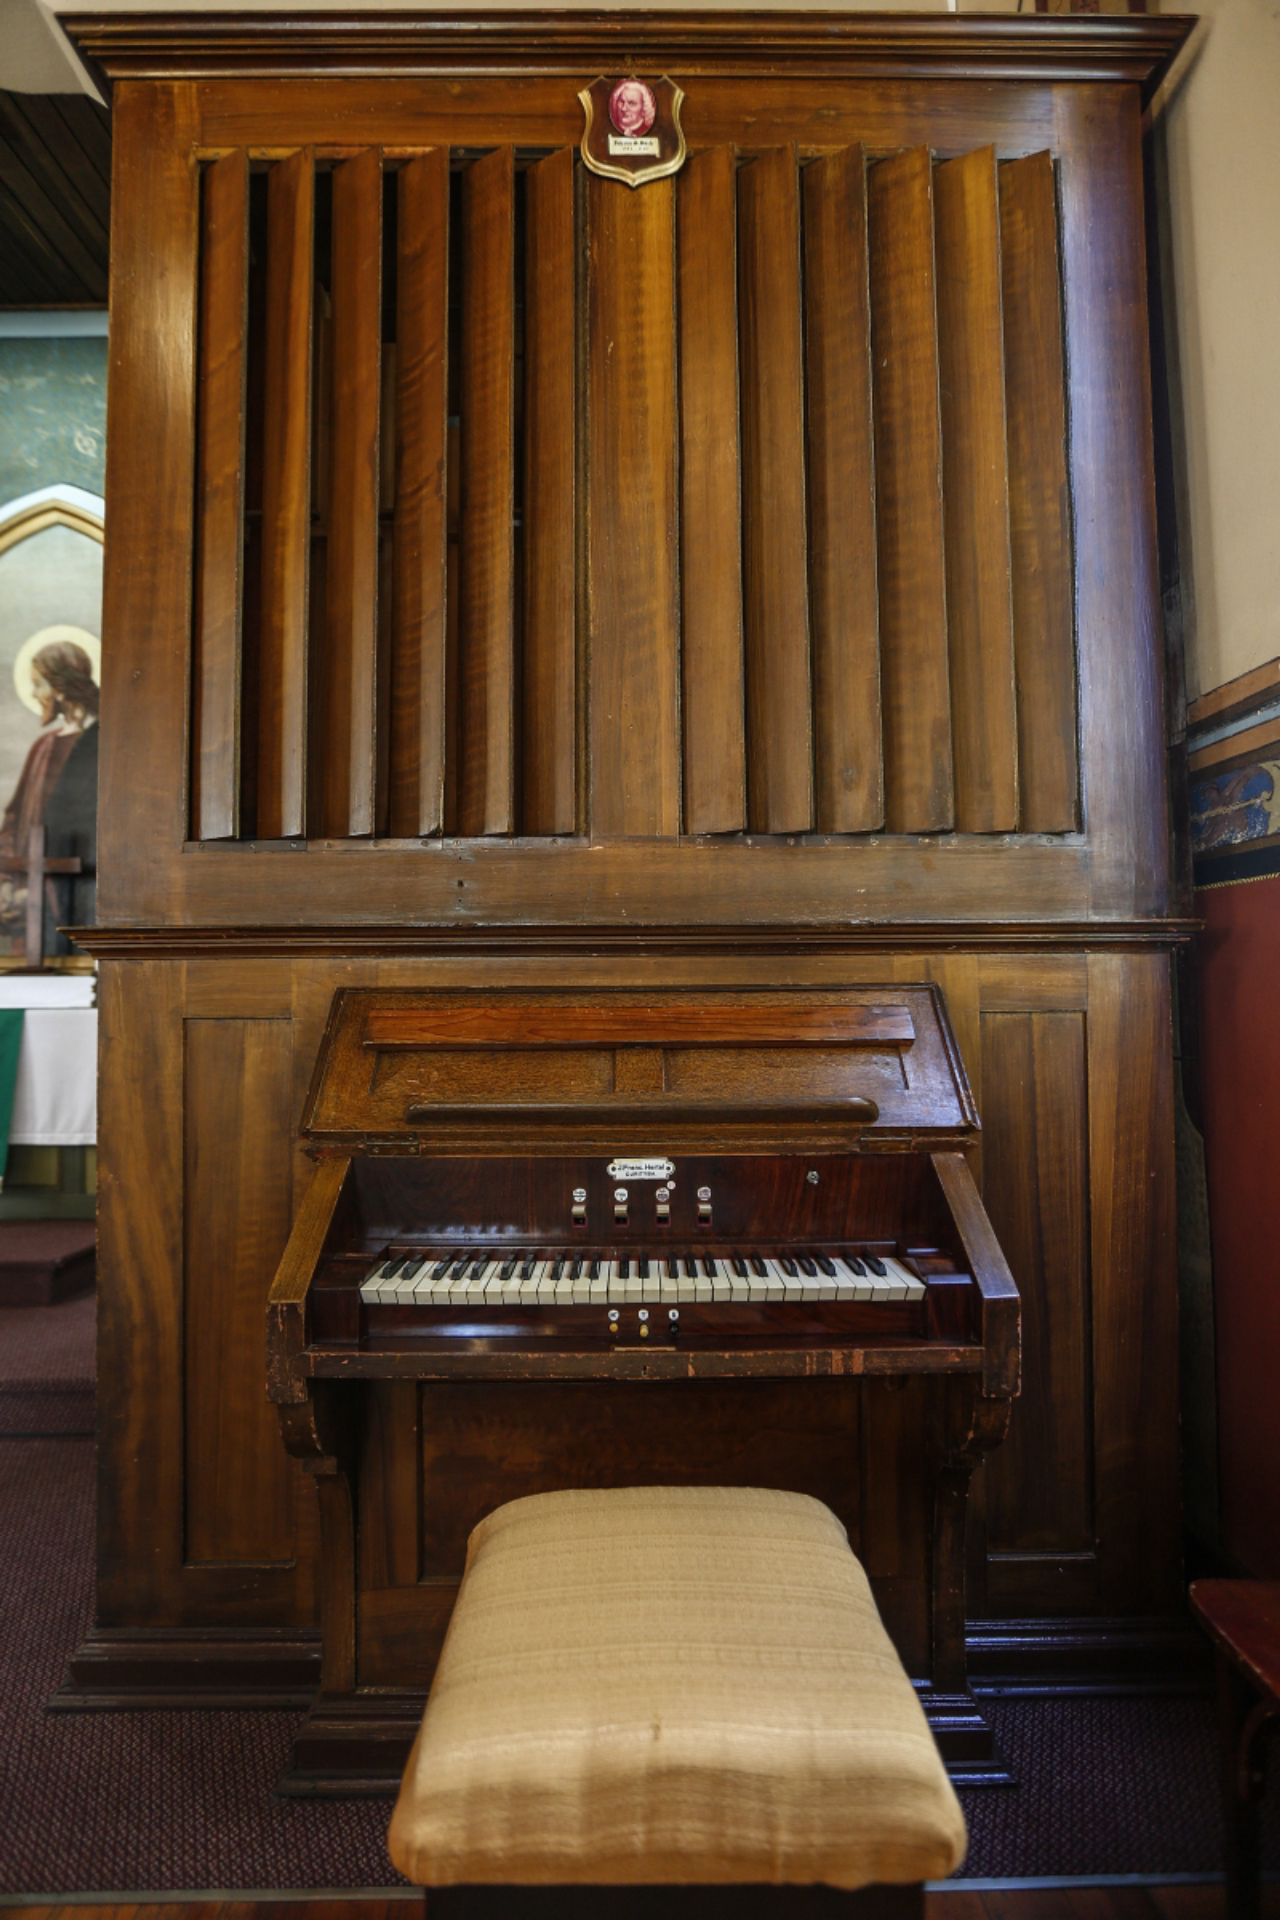 O raro exemplar do órgão de armário, localizado na igreja.